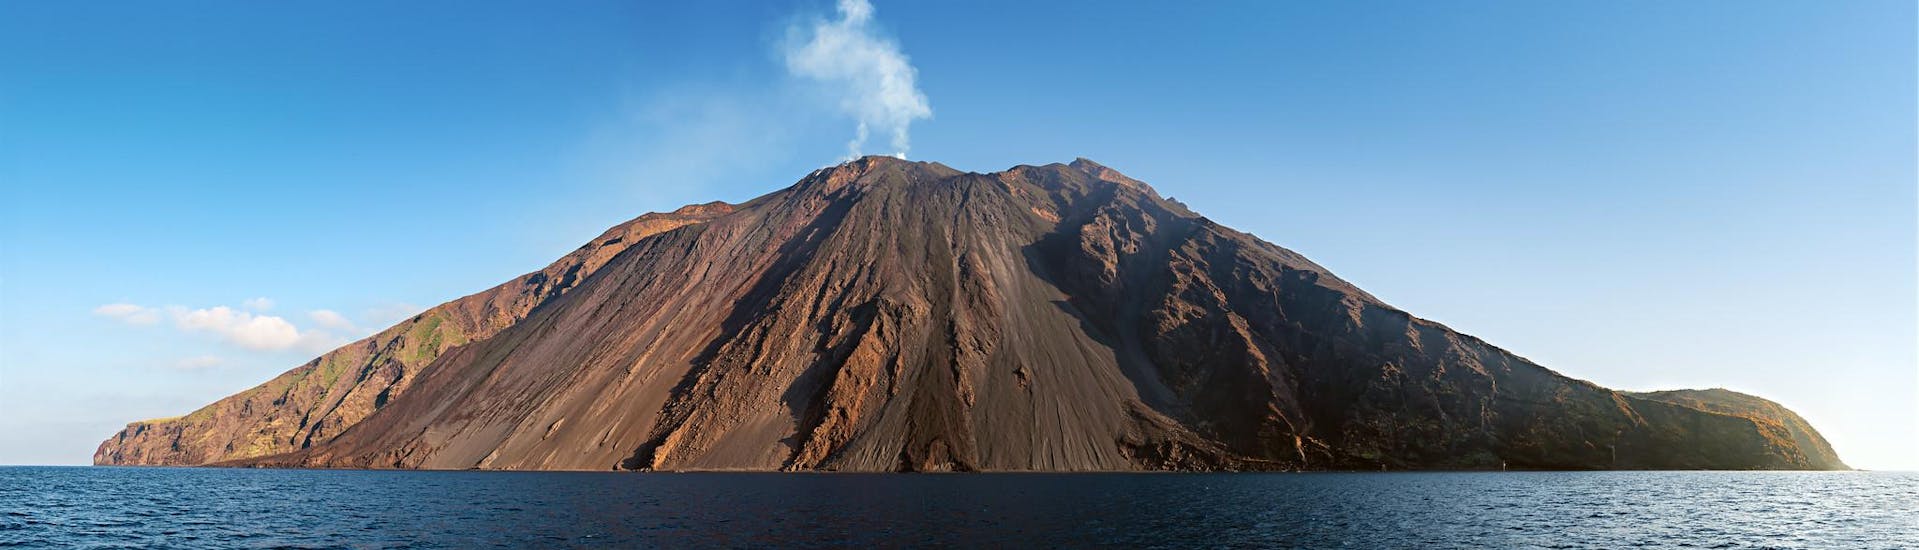 Maak een boottocht en bezoek een vulkaan